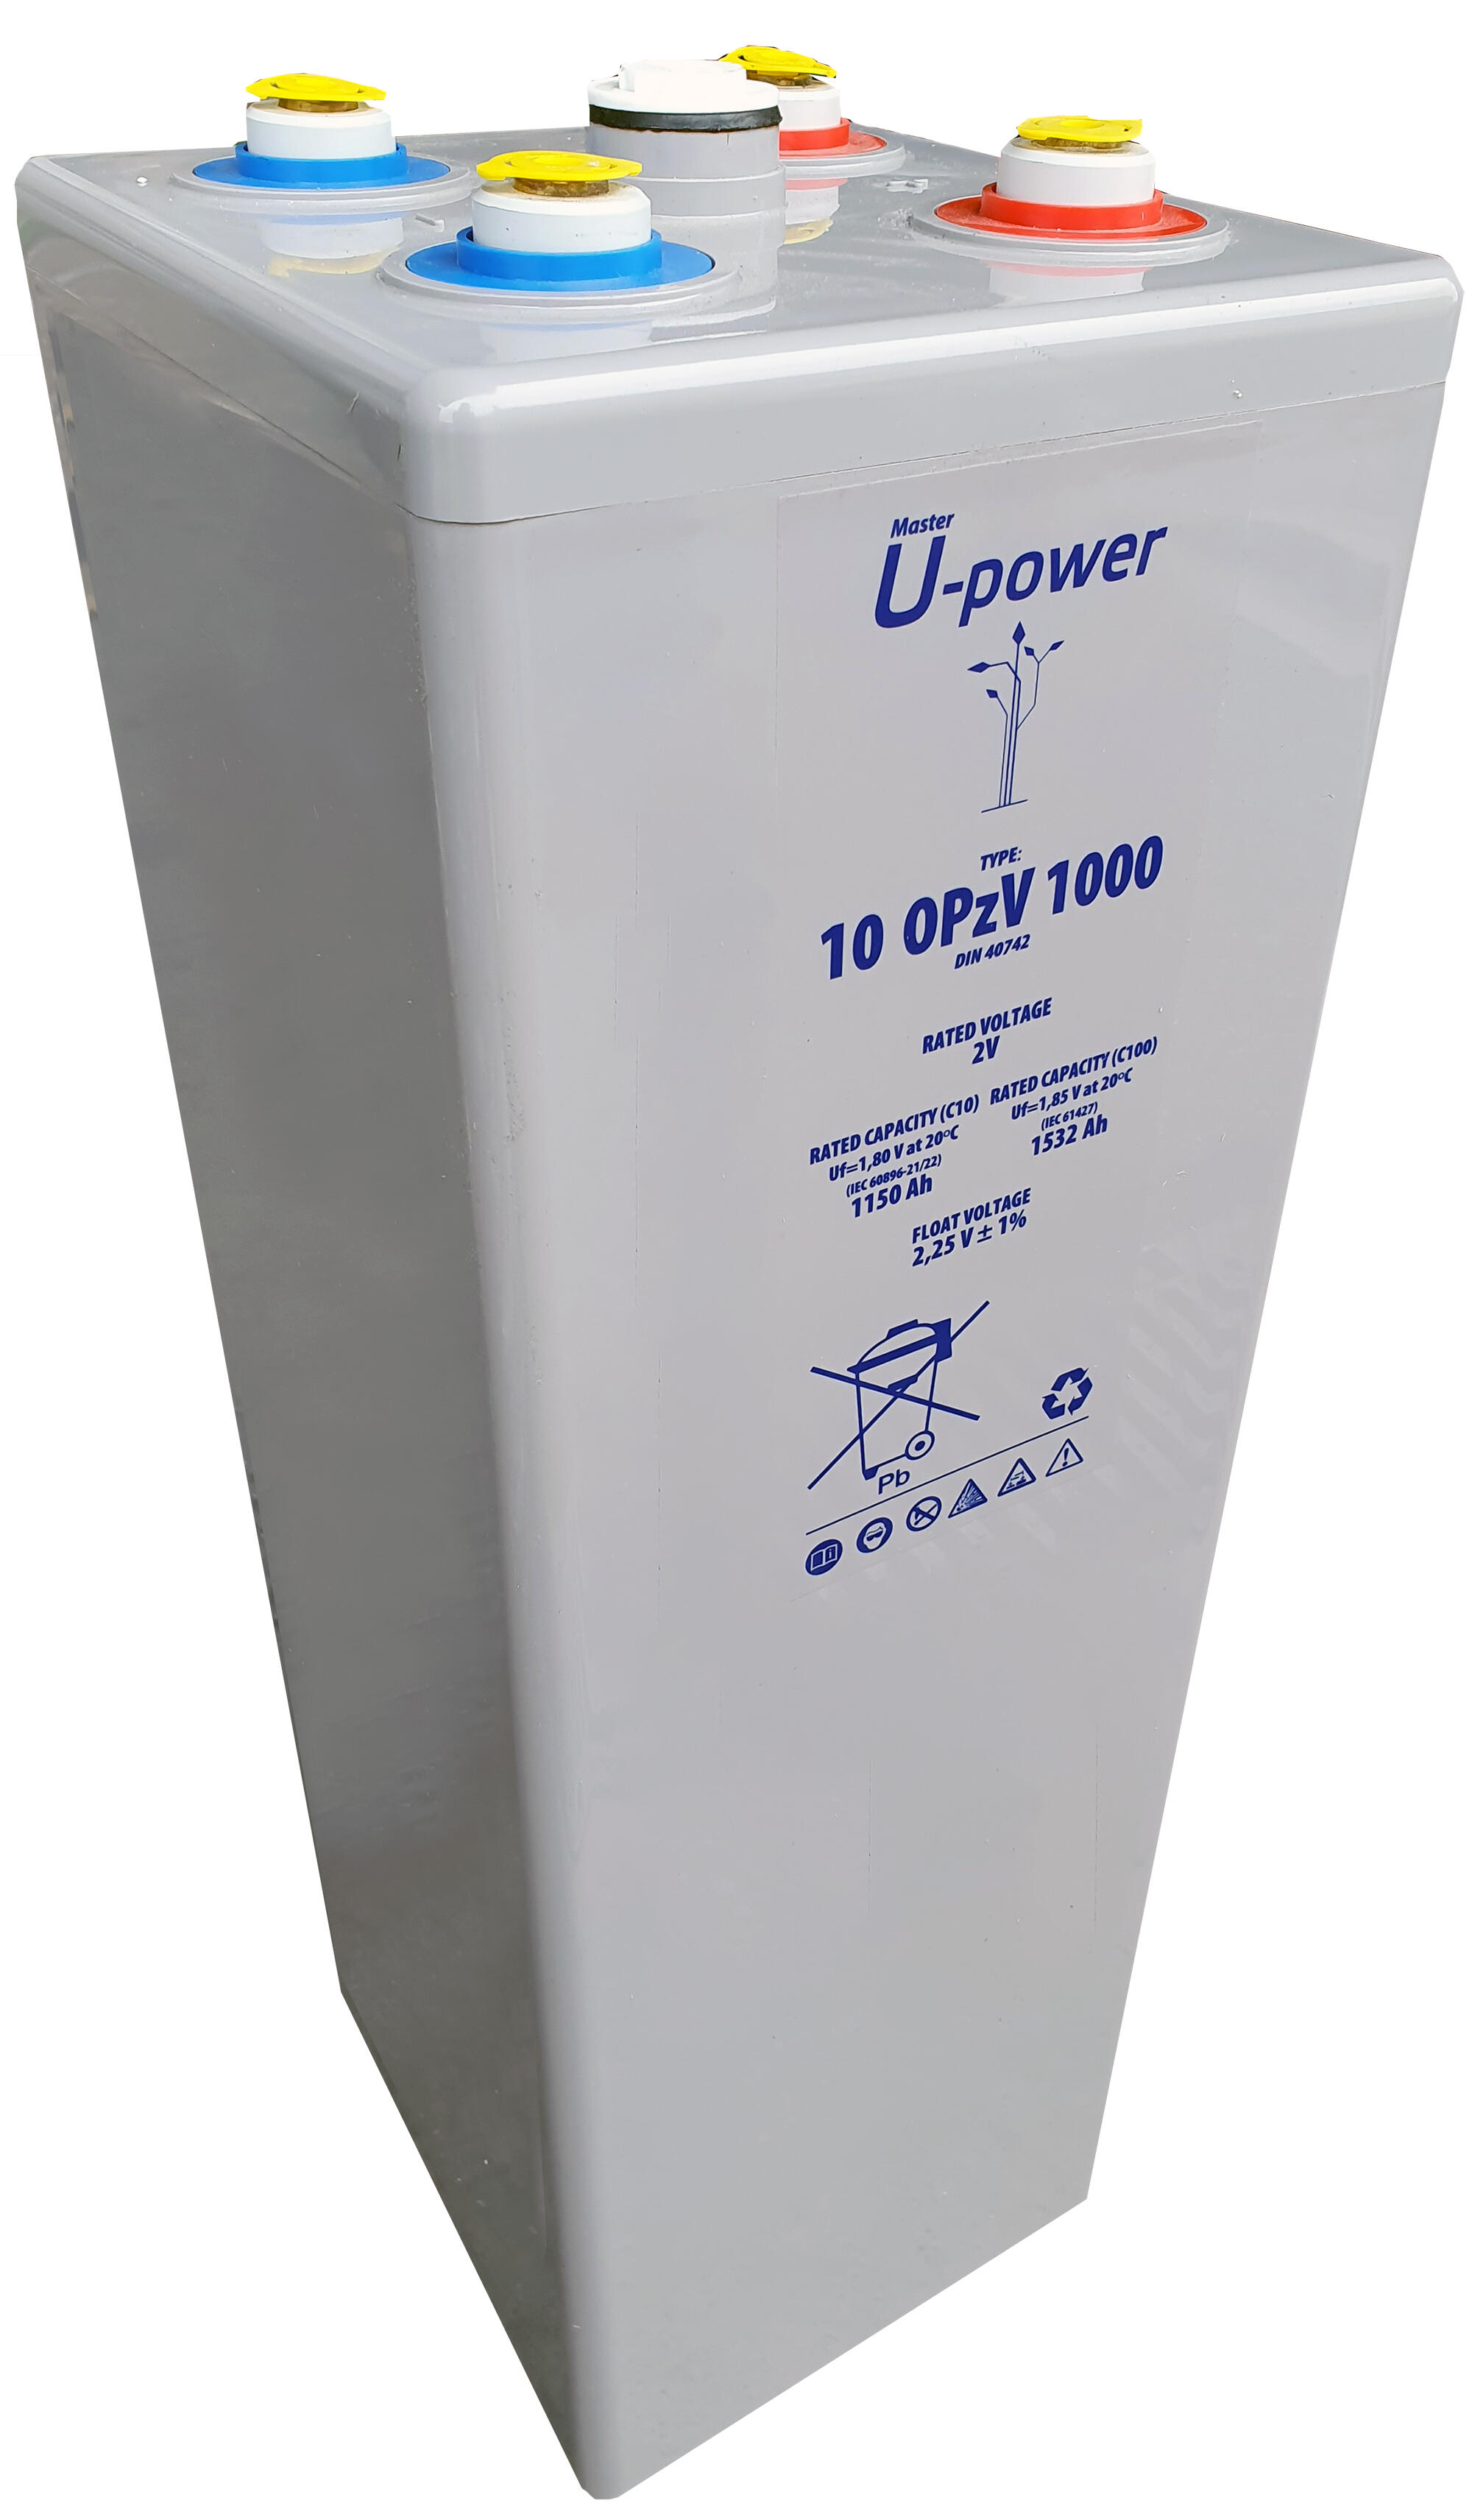 Batería solar estacionaria de gel u-power 10 opzv 1000 2v c100 1532ah